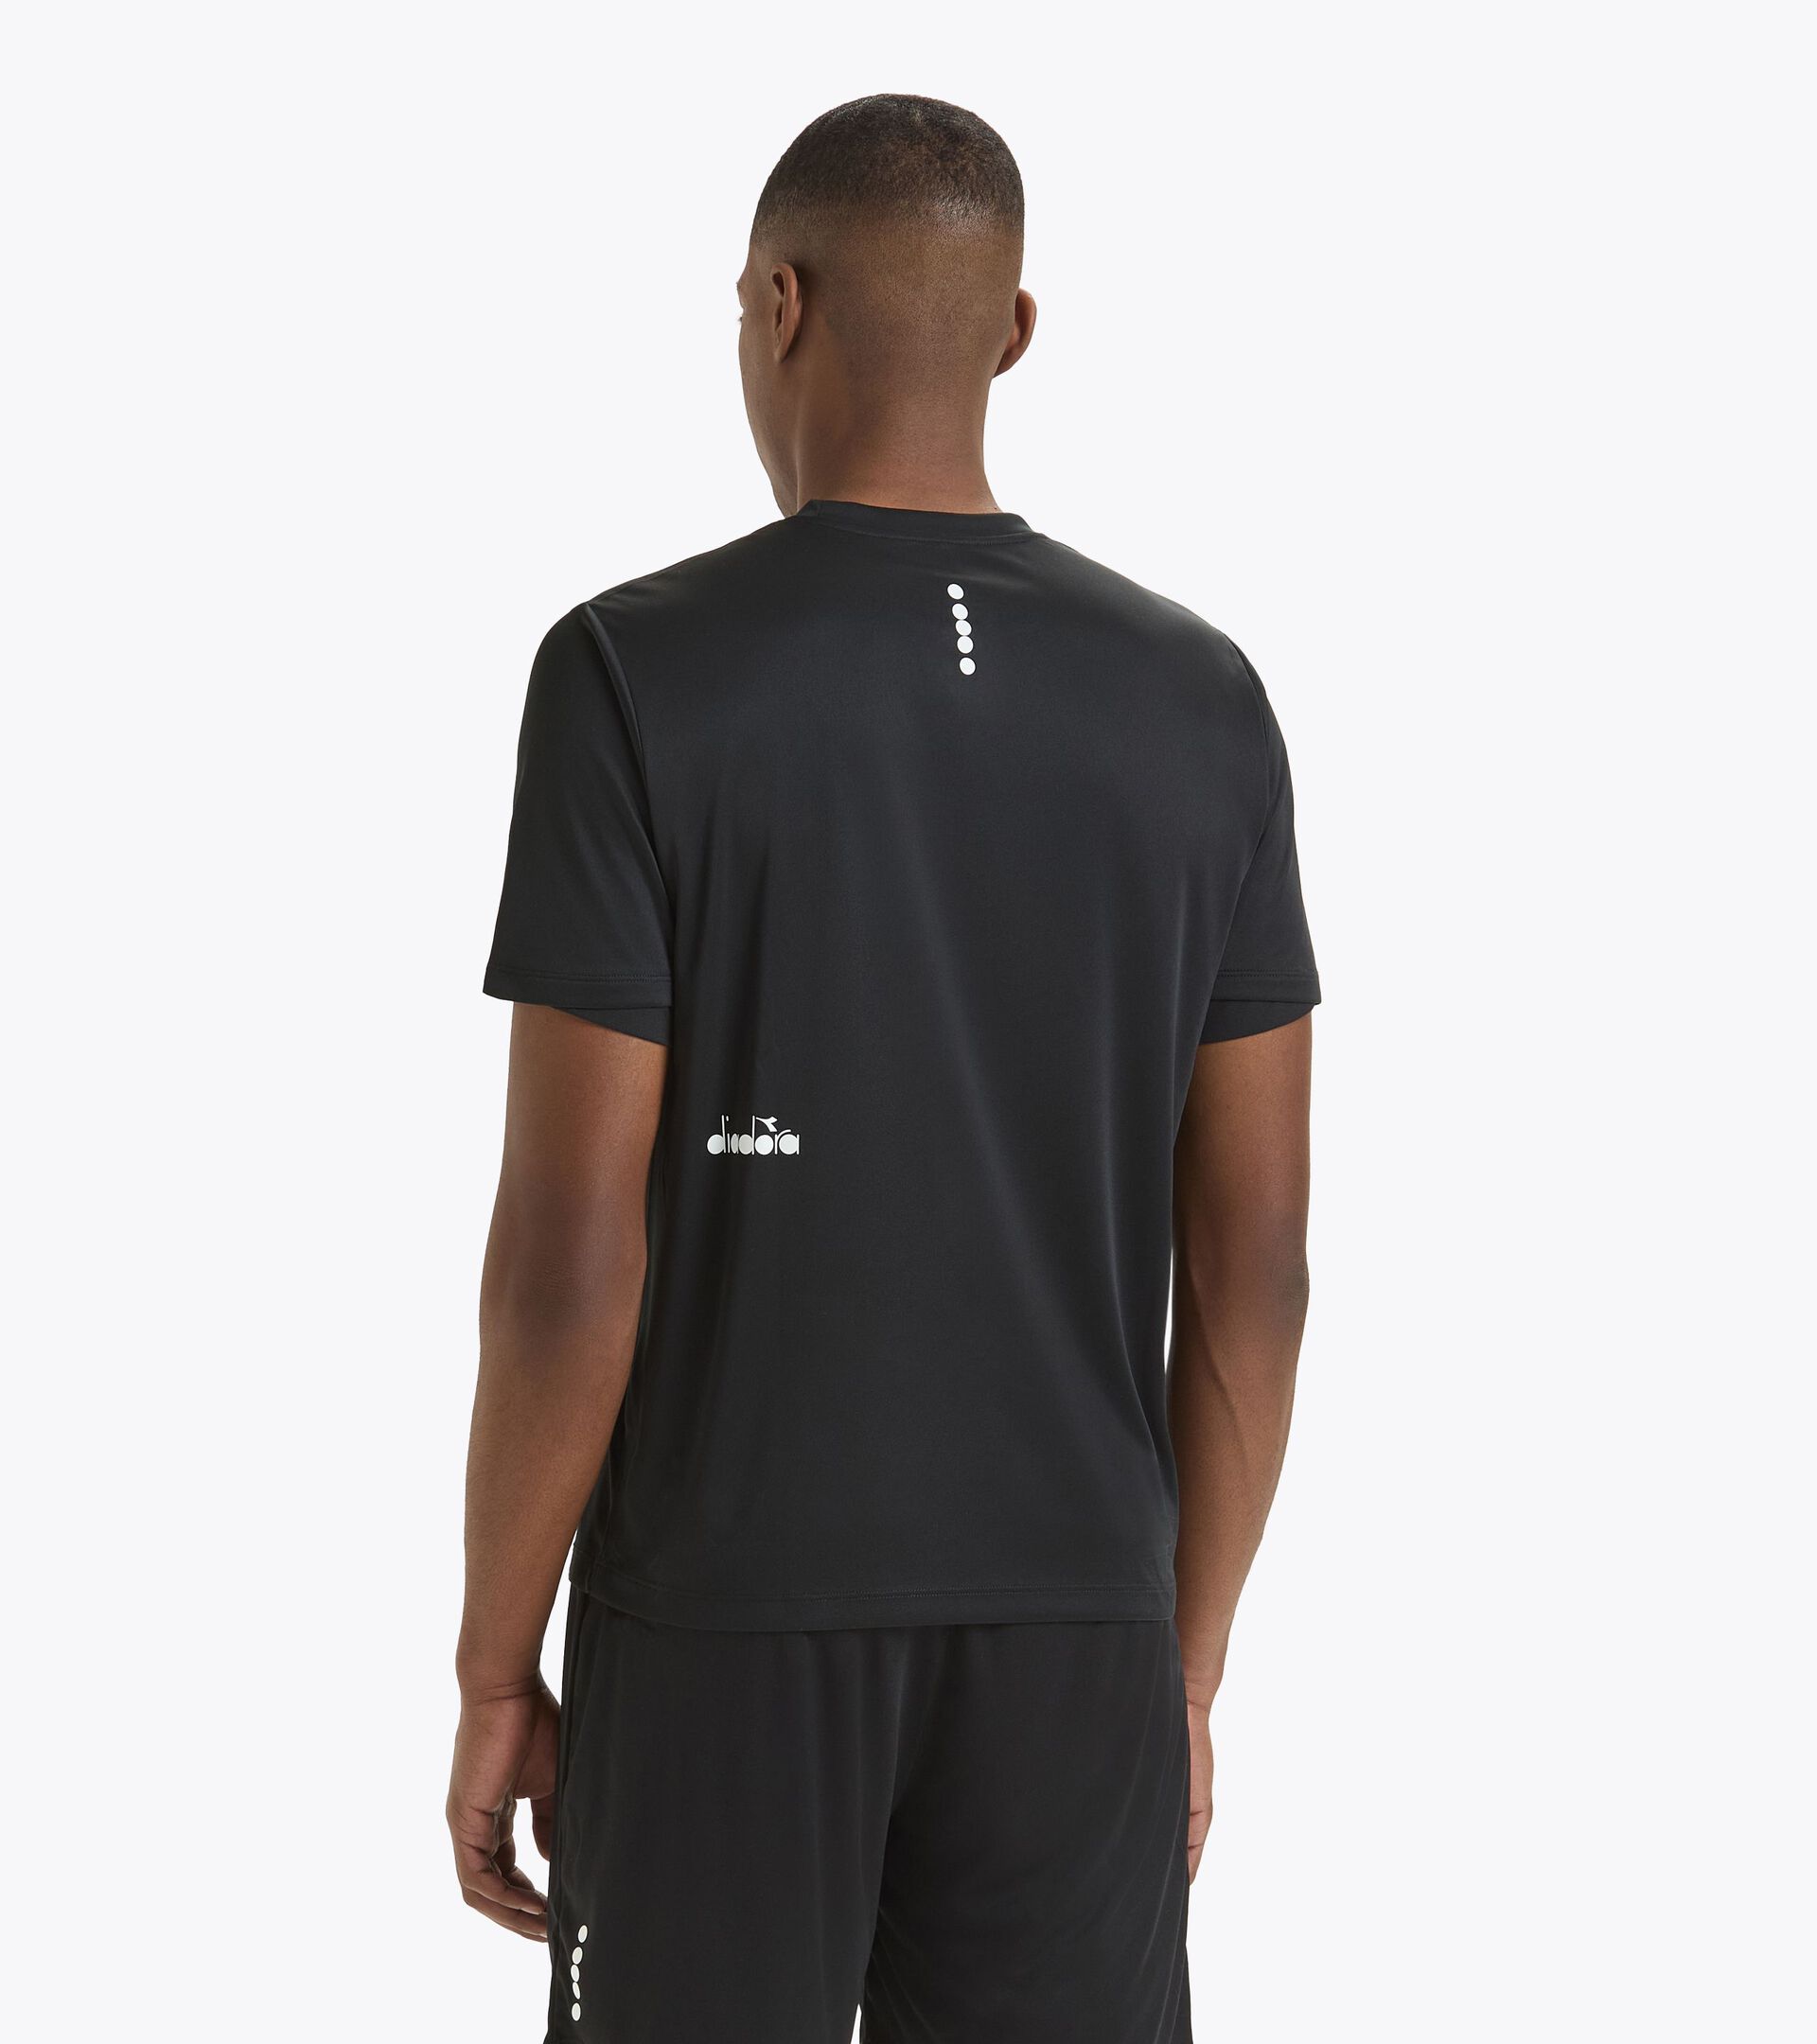 Calcio training t-shirt - Unisex TRAINING SHIRT SCUDETTO BLACK - Diadora